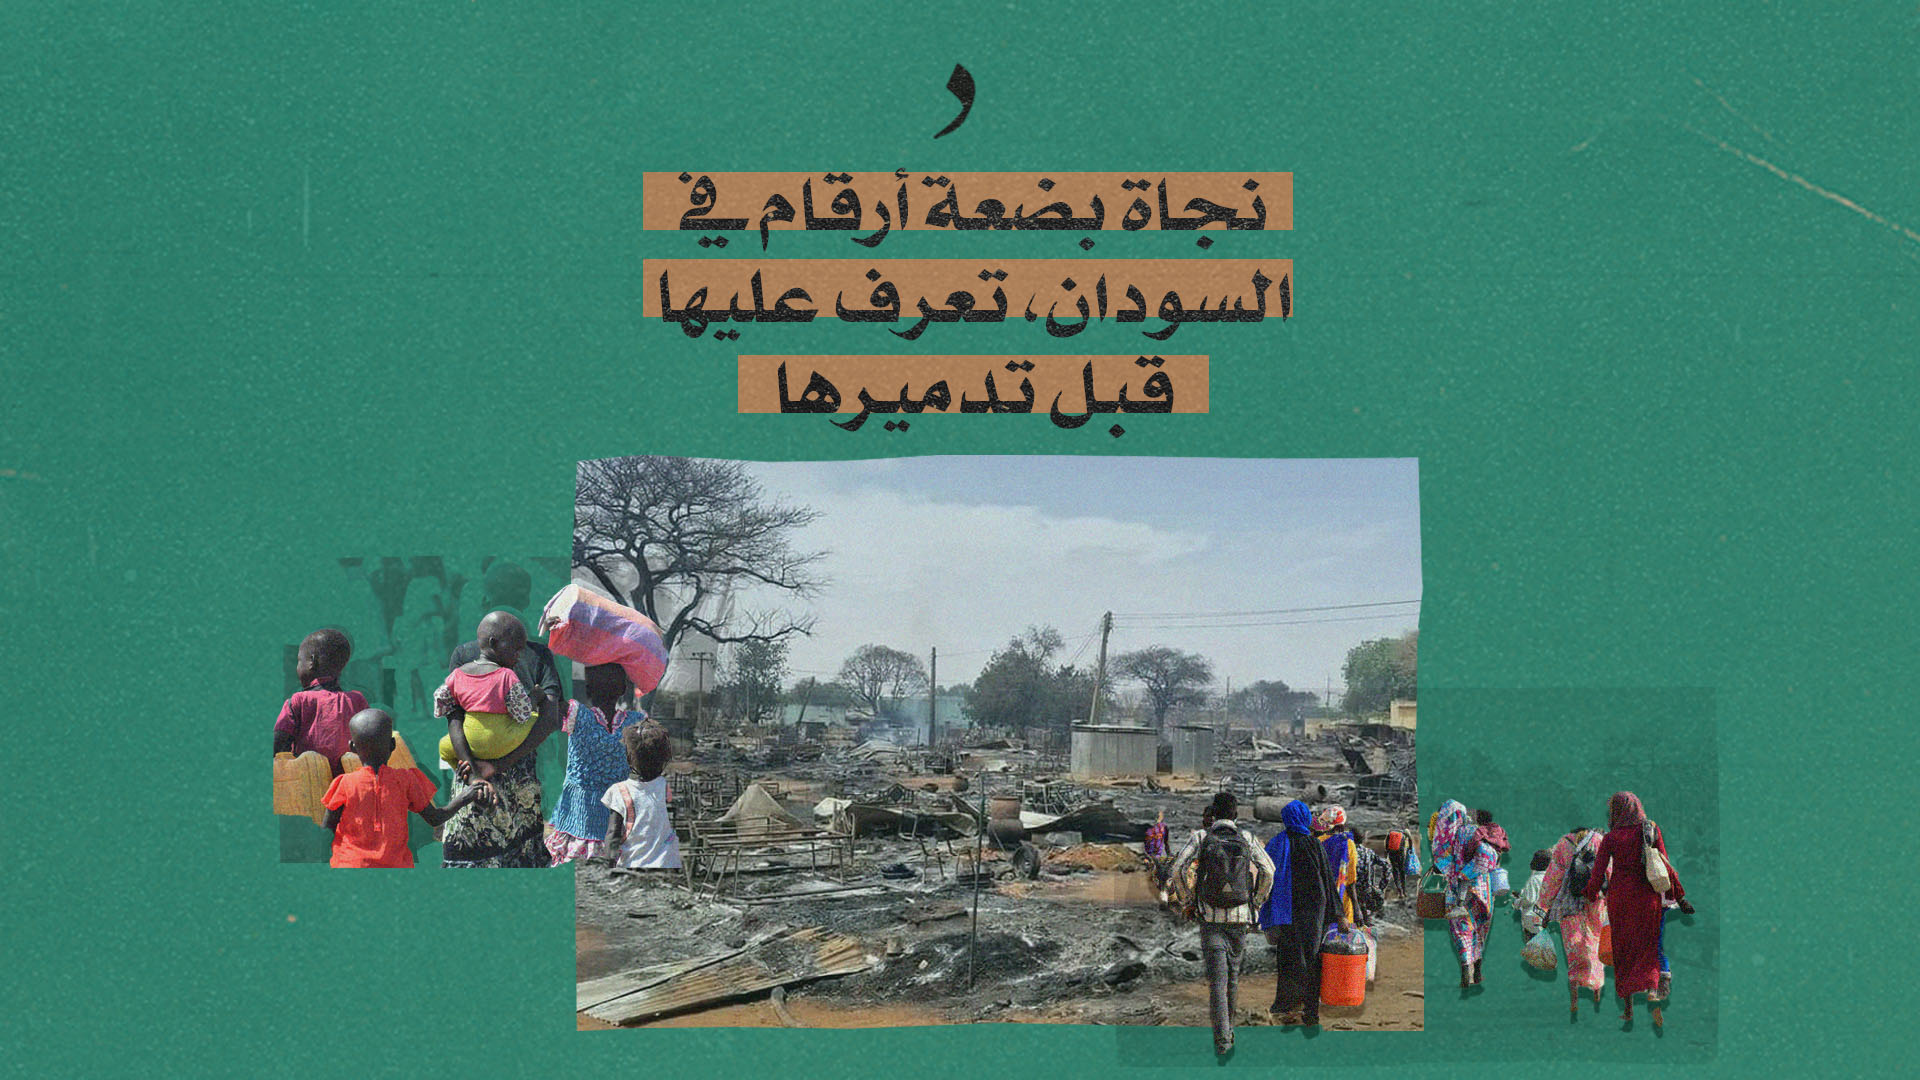 صورة نجاة بضعة أرقام في السودان، تعرف عليها قبل تدميرها